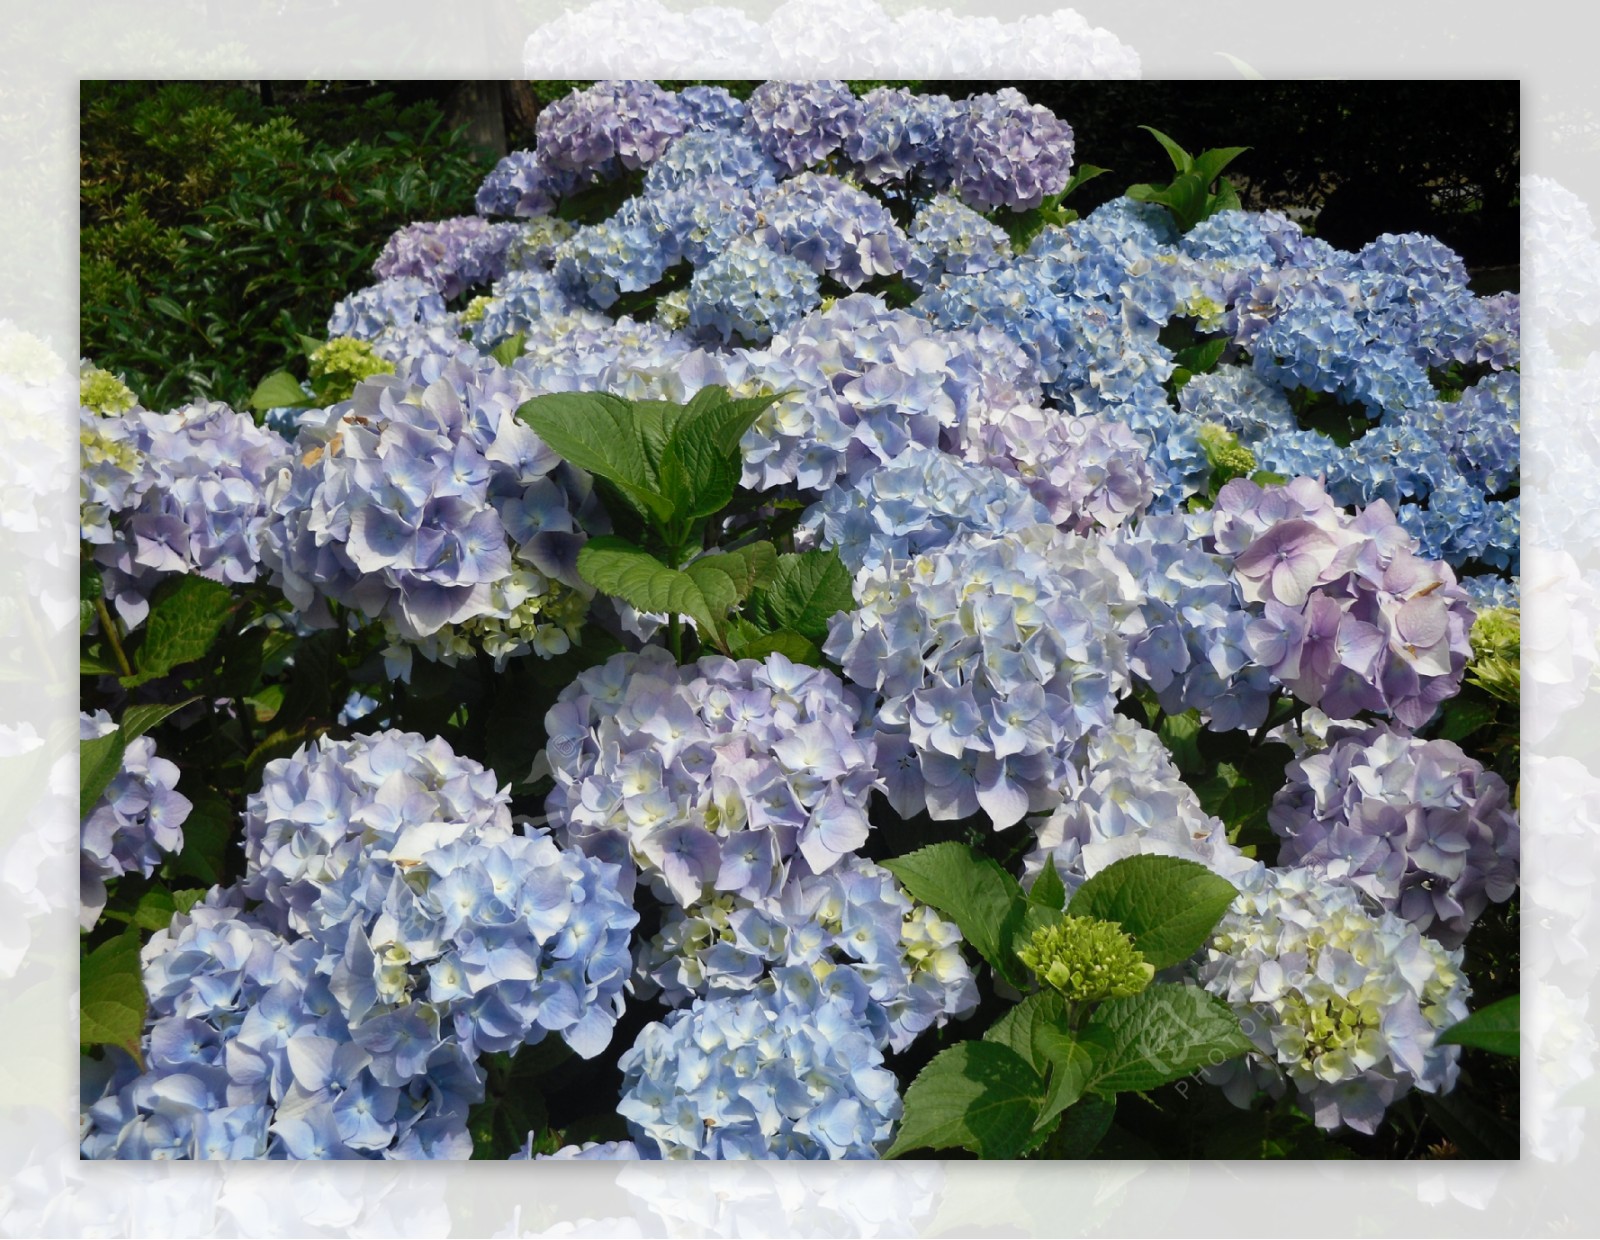 蓝紫色绣球花图片